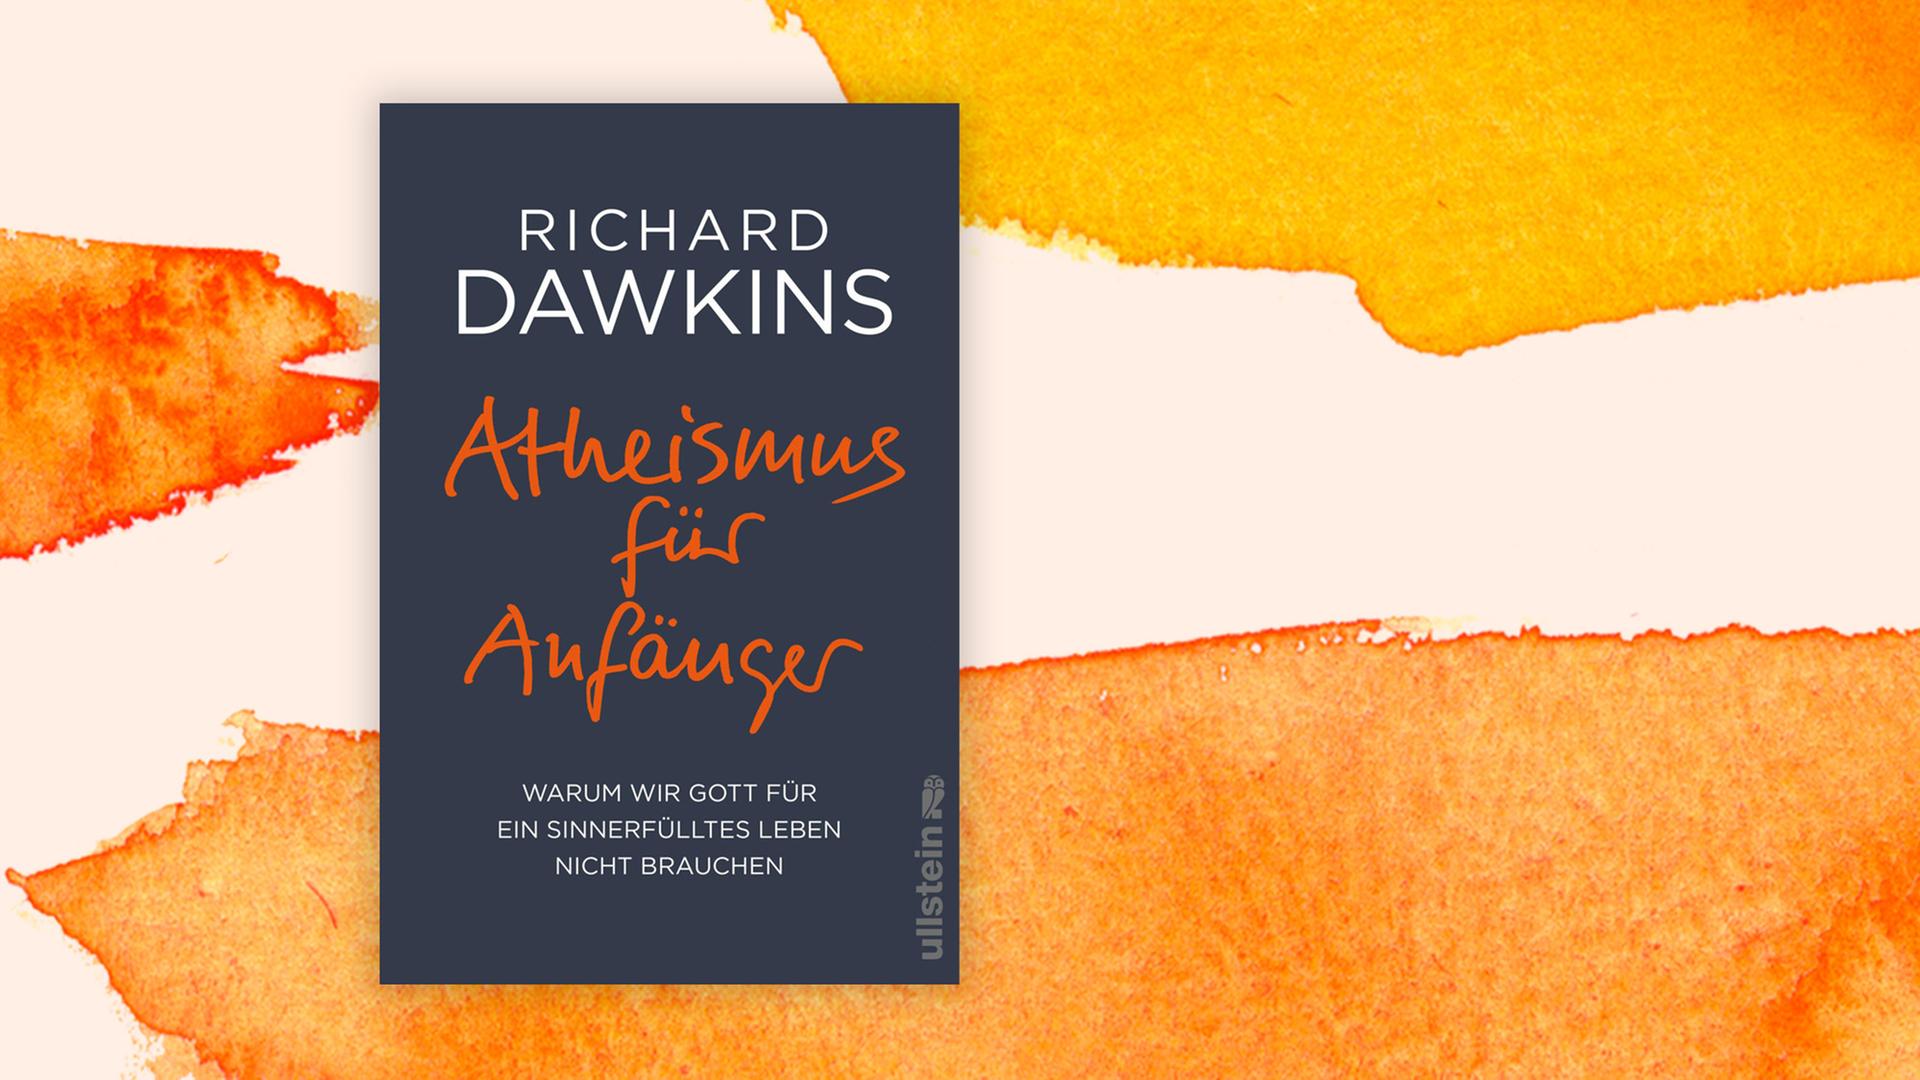 Buchcover "Atheismus für Anfänger" von Richard Dawkins